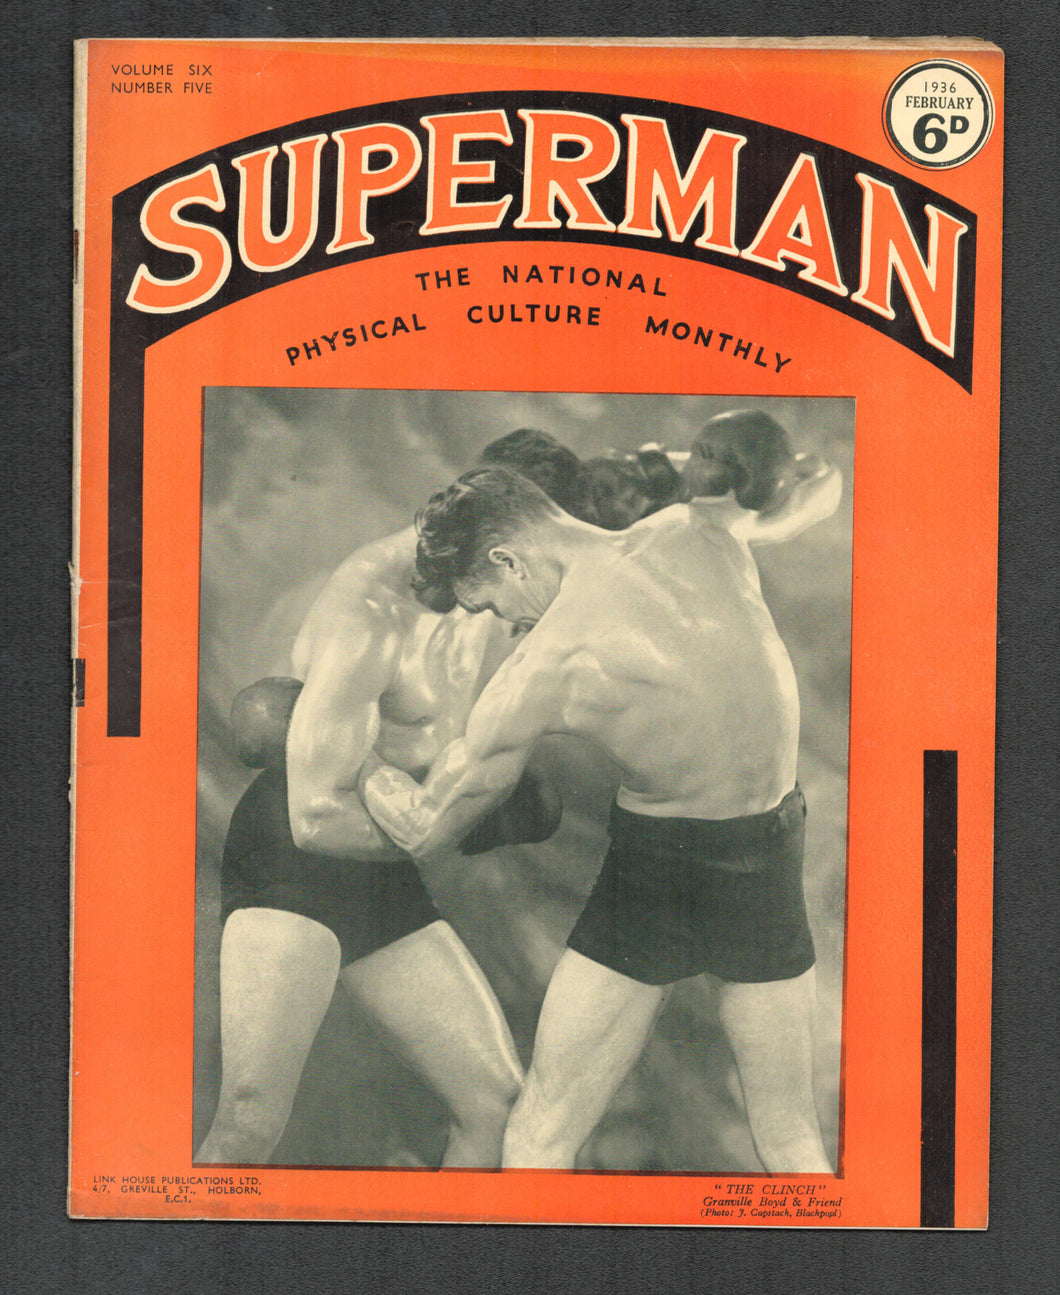 Superman Vol 6 No 5 Feb 1936